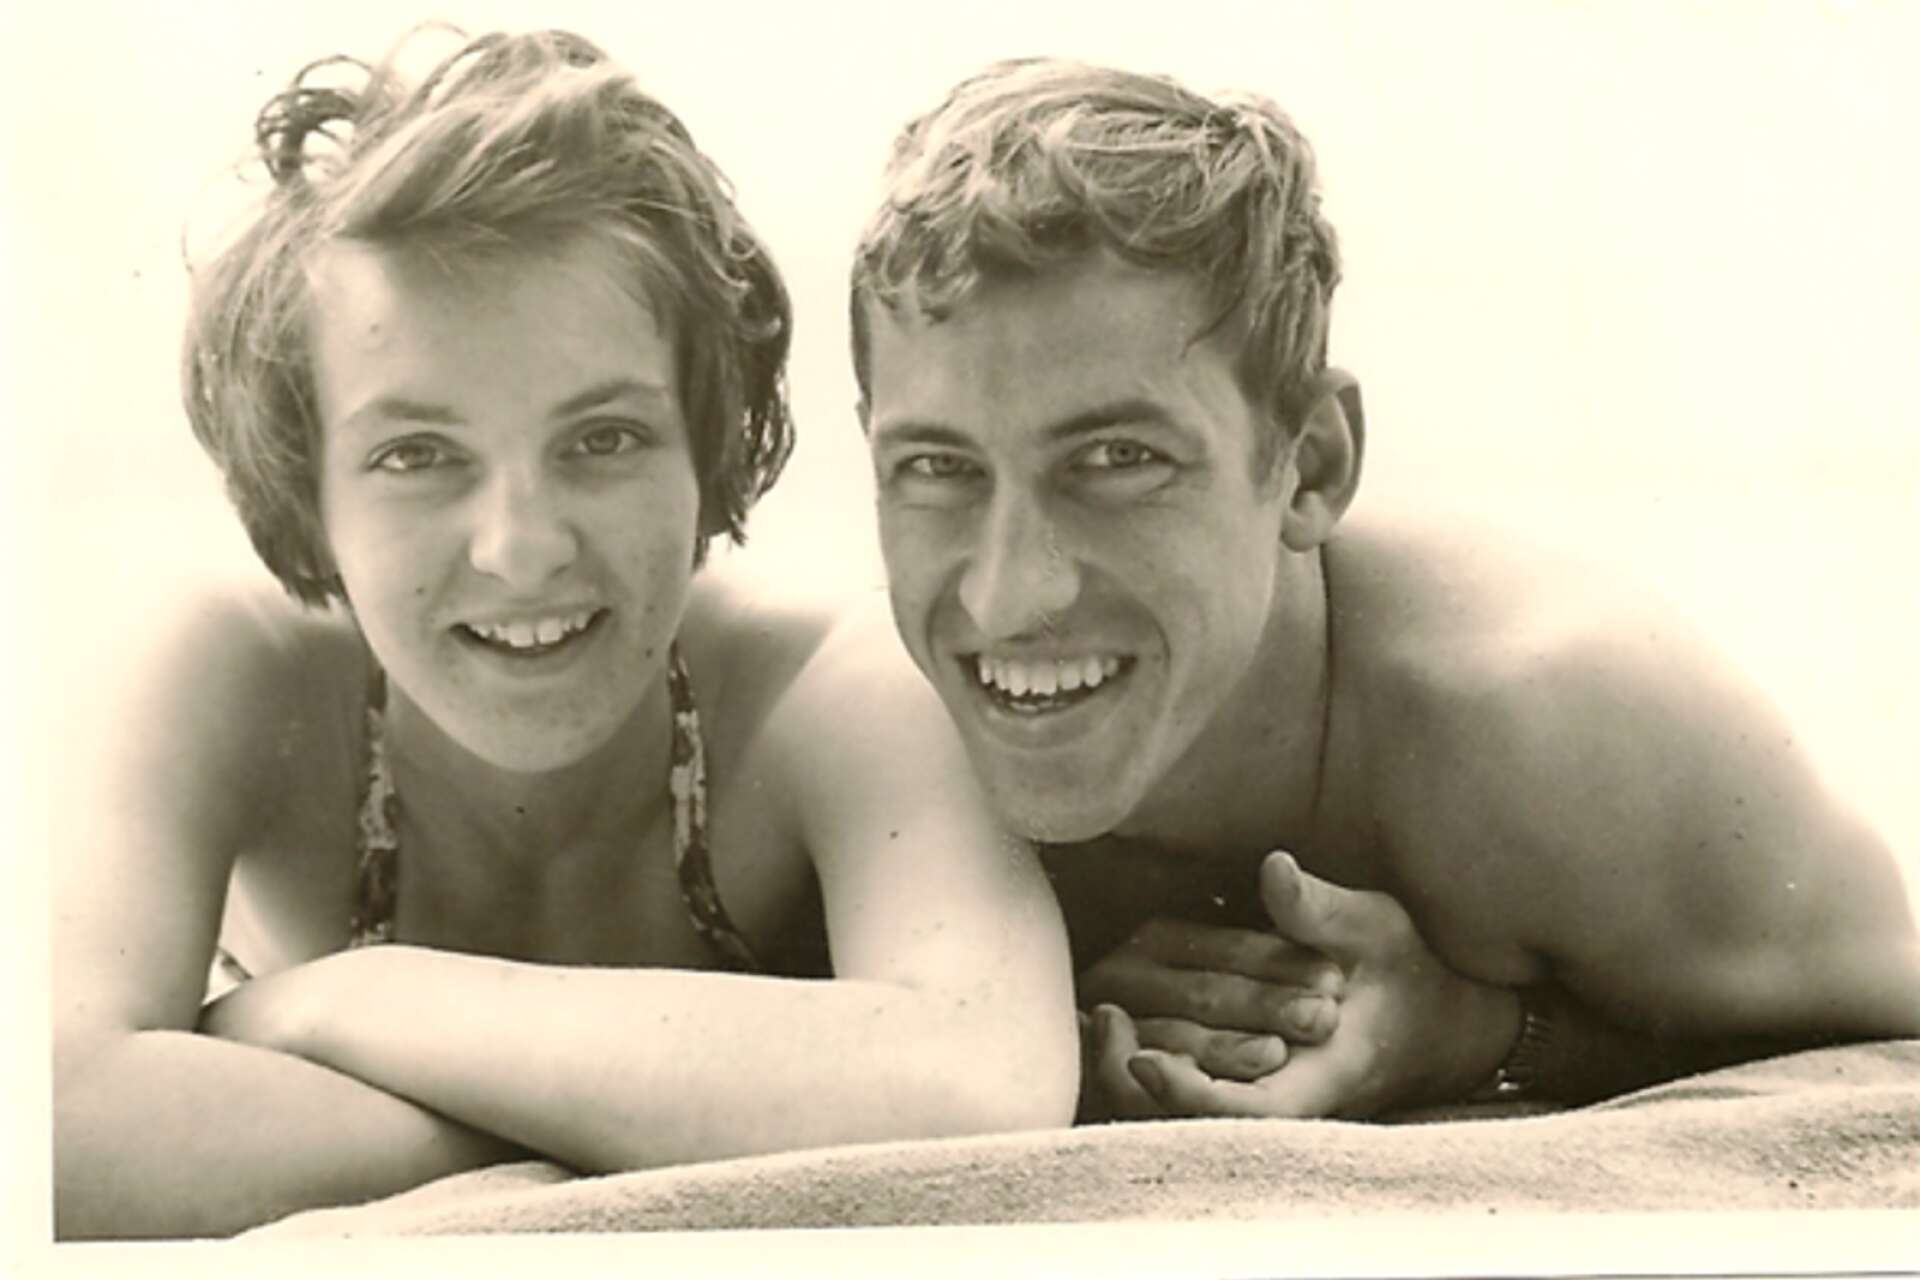 1960 köpte Lennart en kamera med självutlösare, då tog paret denna bild tillsammans på stranden på Mangenbaden. 